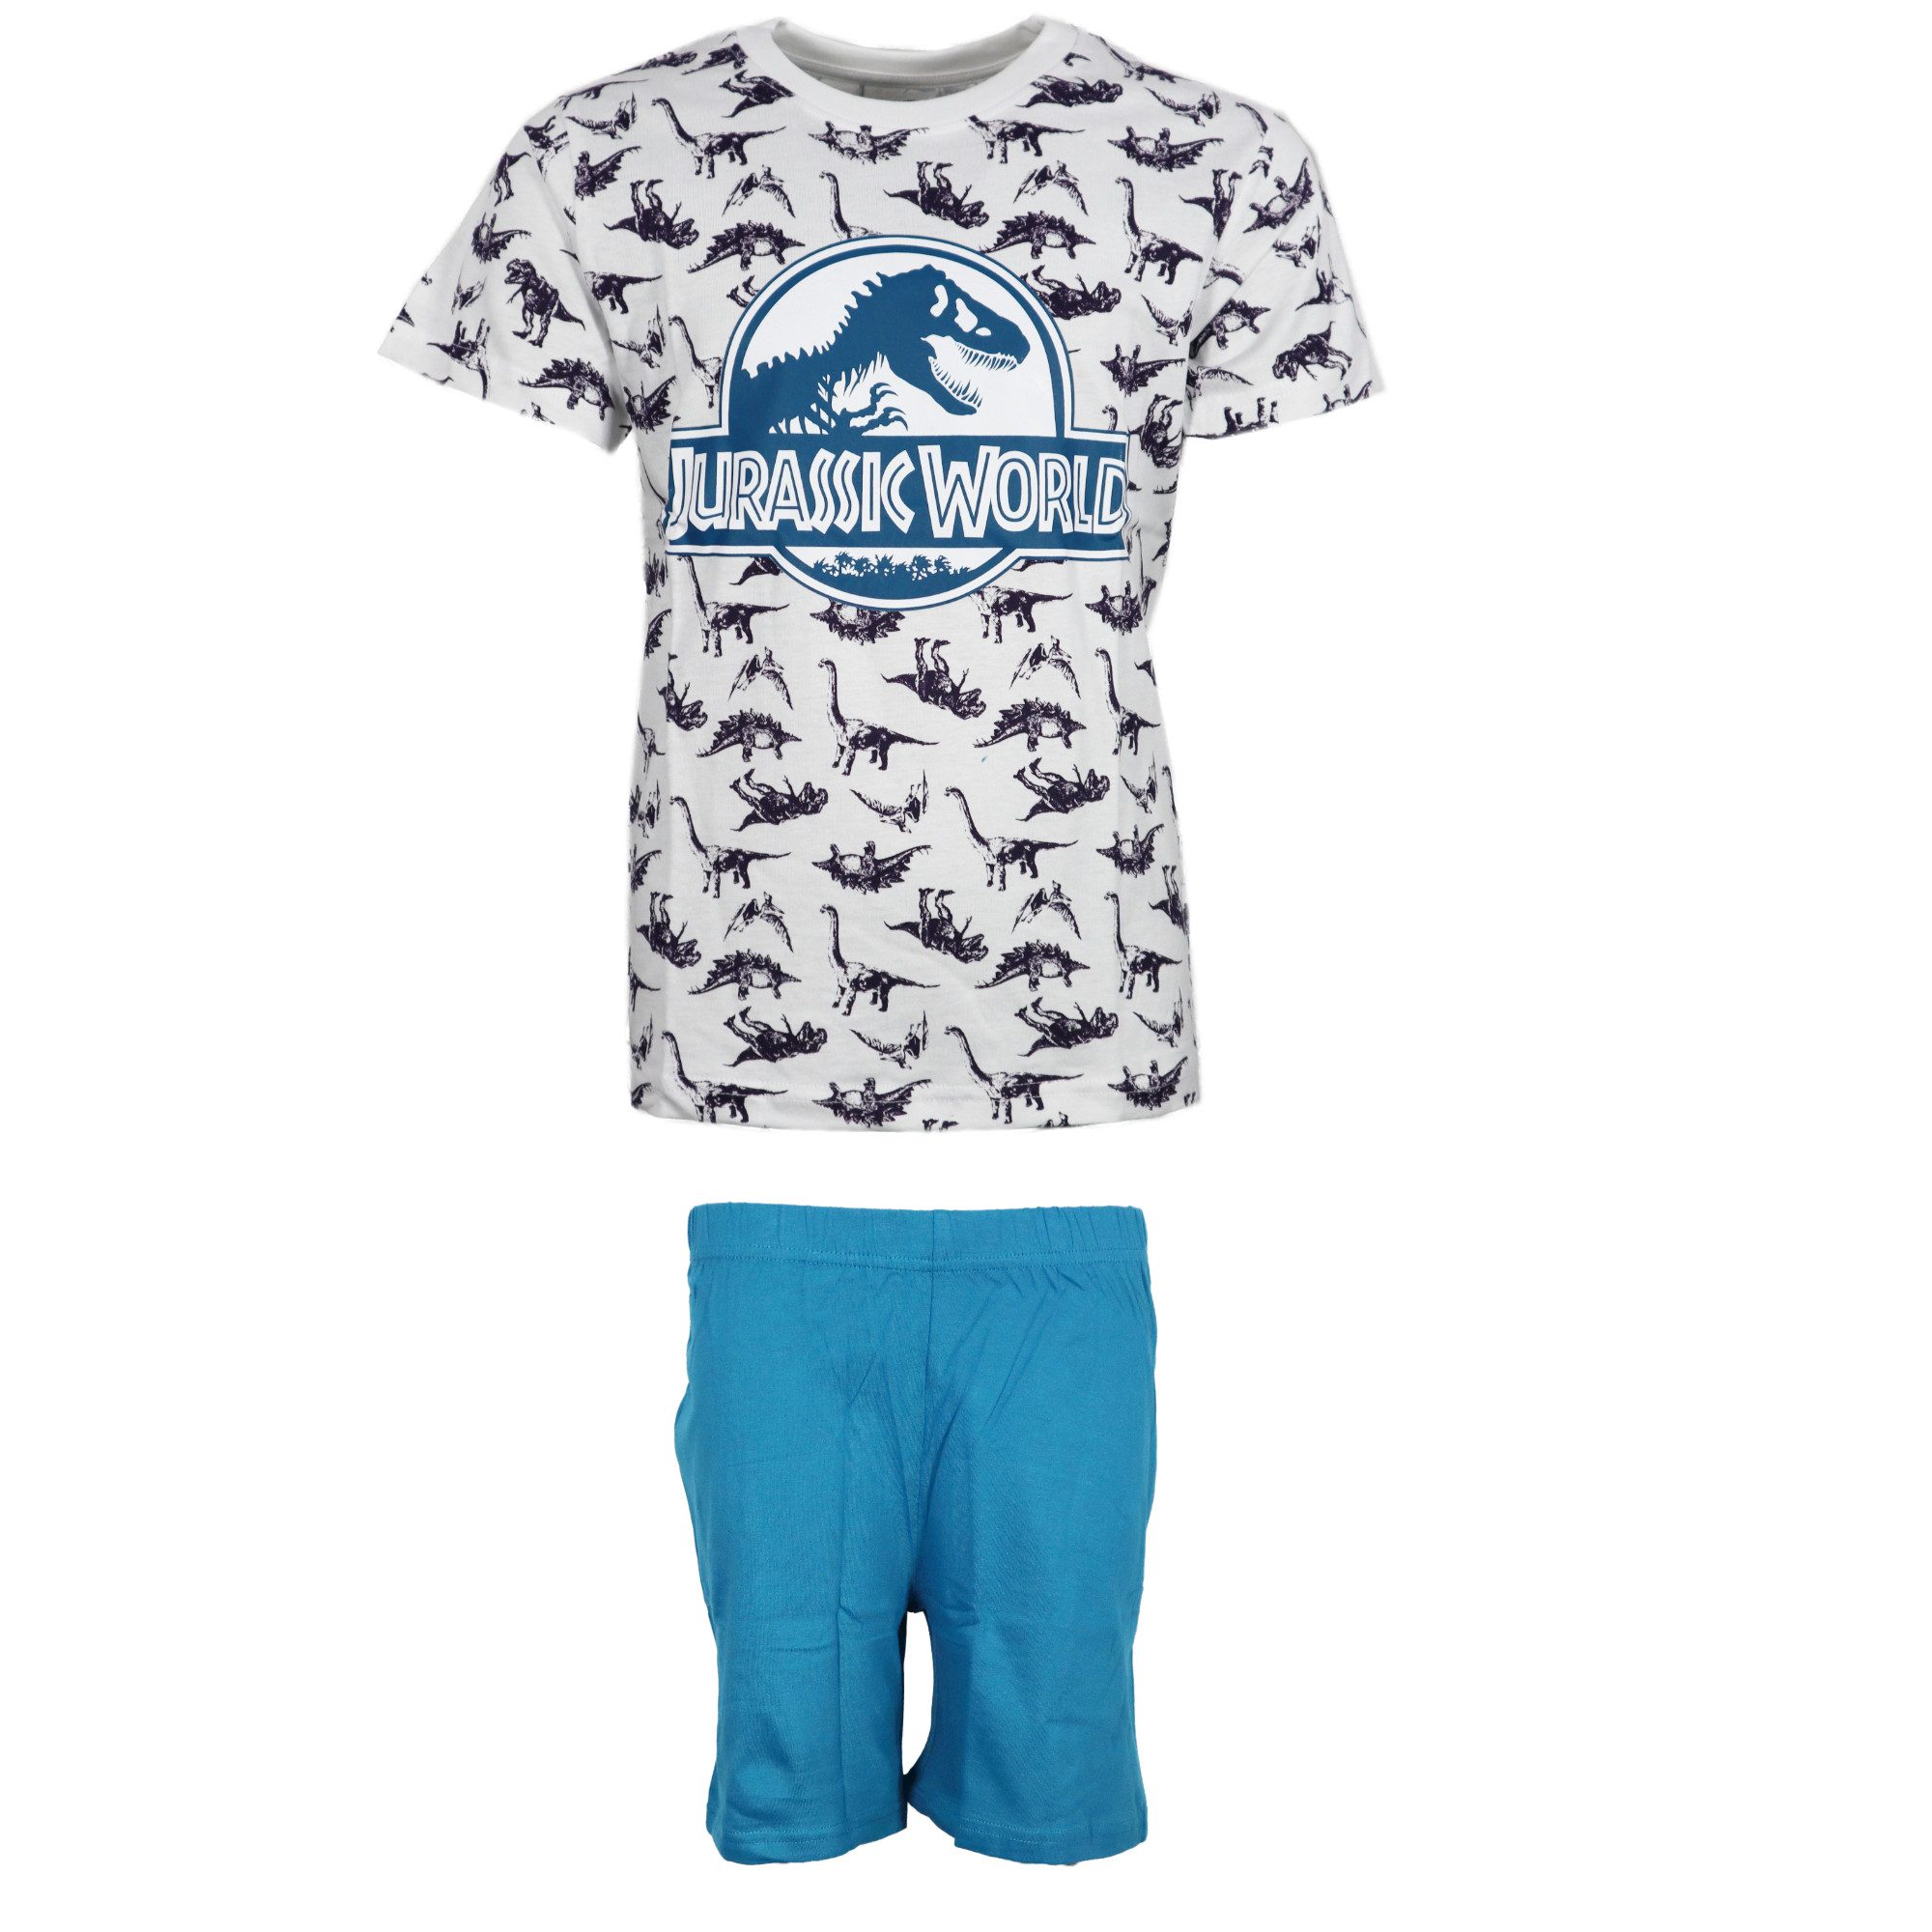 Jurassic World Schlafanzug Jurassic World T-Rex Jungen Kinder Pyjama Gr. 134 bis 164, Baumwolle